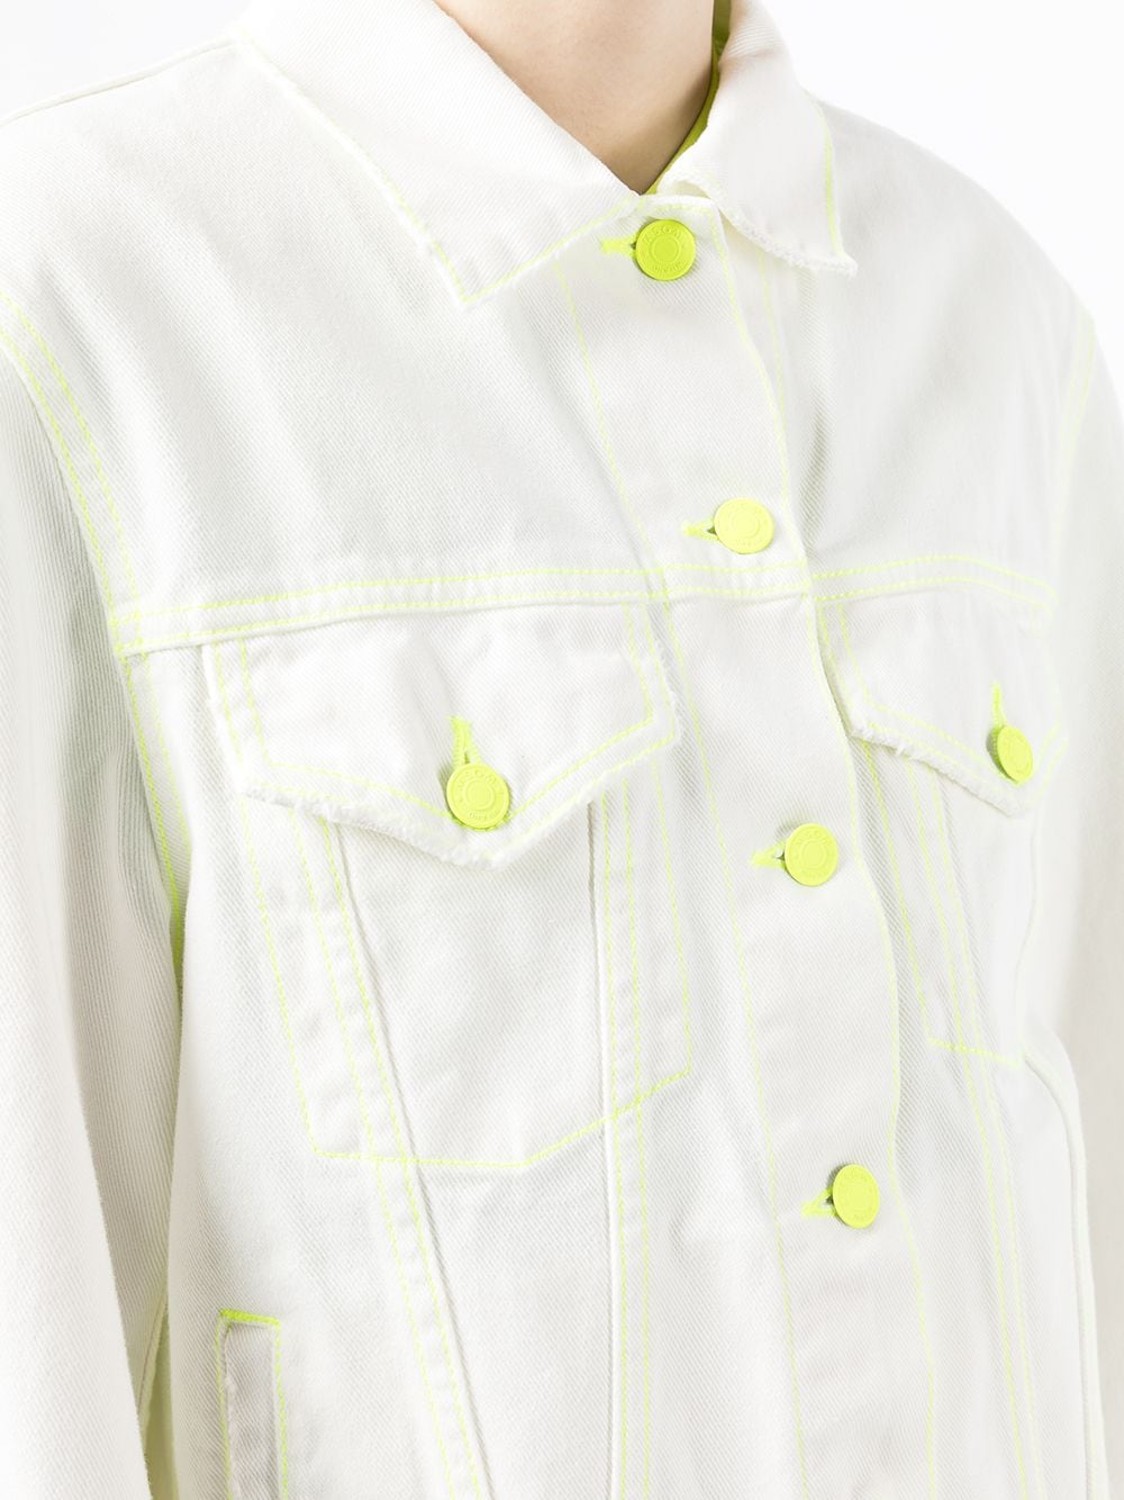 shop MSGM Saldi Giacche: Giacche MSGM, giacca di jeans, modello corto, chiusura frontale con bottoni, maniche lunghe con polsino, bianca con dettagli fluorescenti.

Composizione: 100% cotone. number 2312